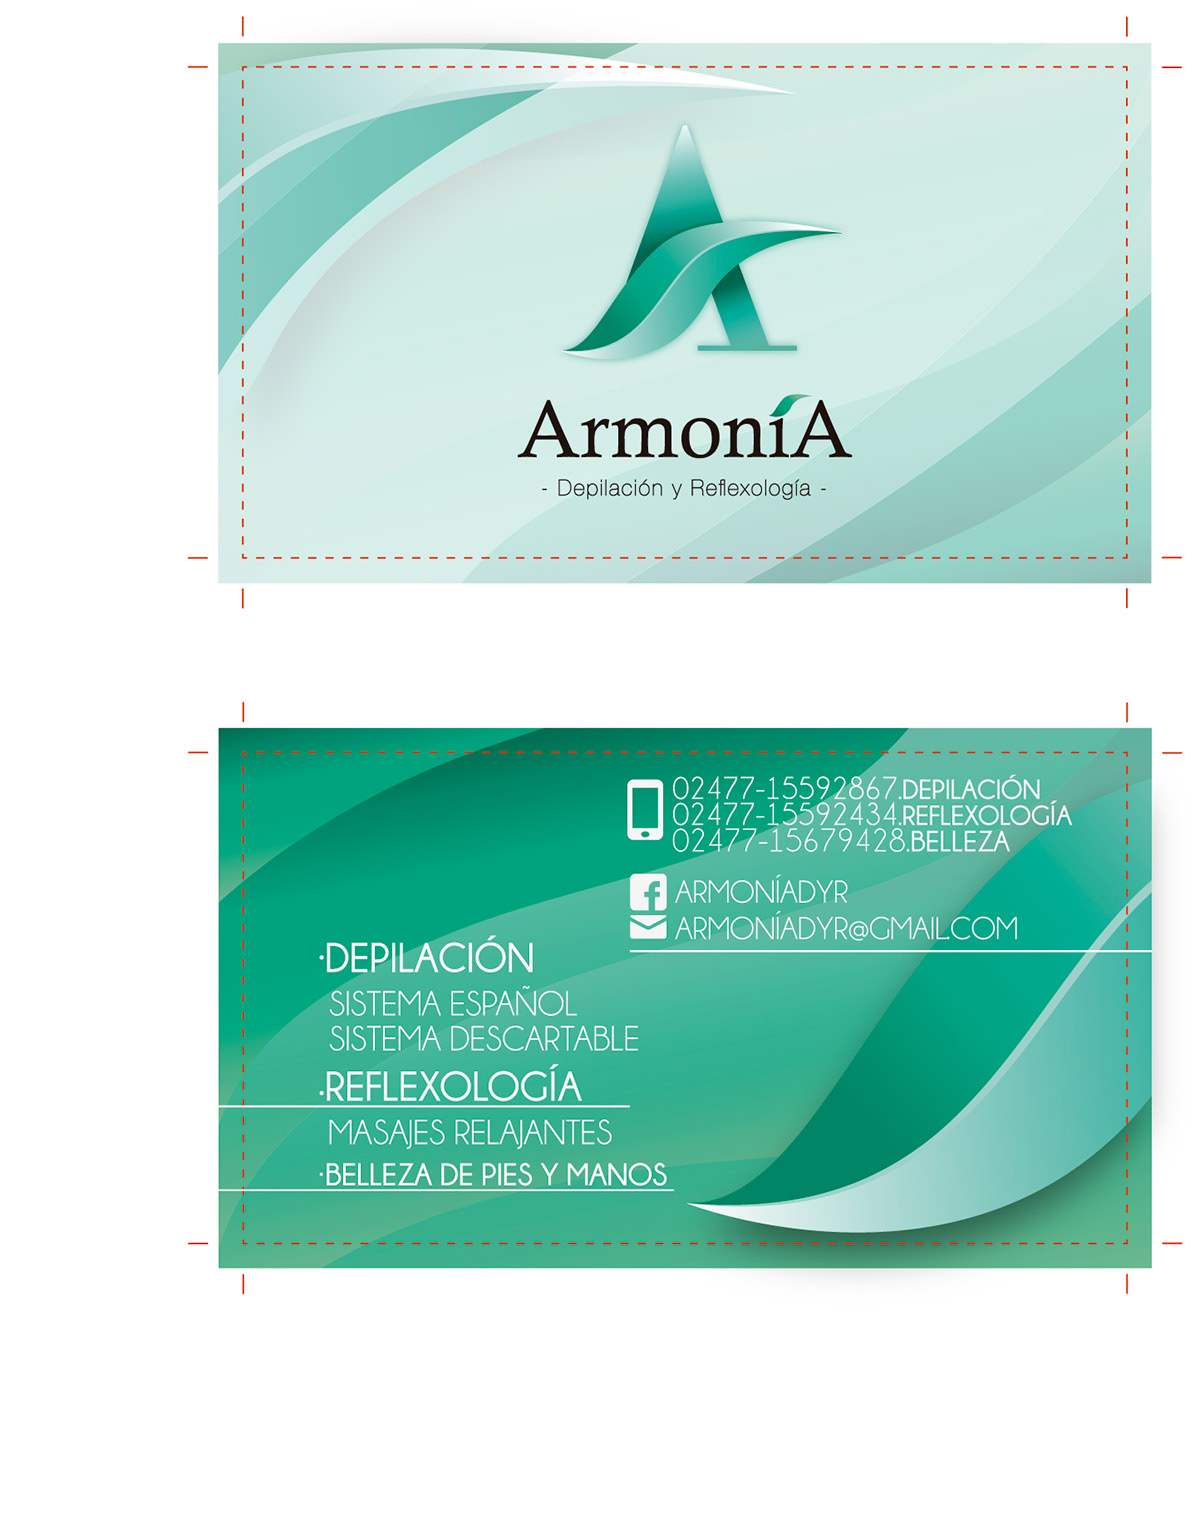 armonia graphic design